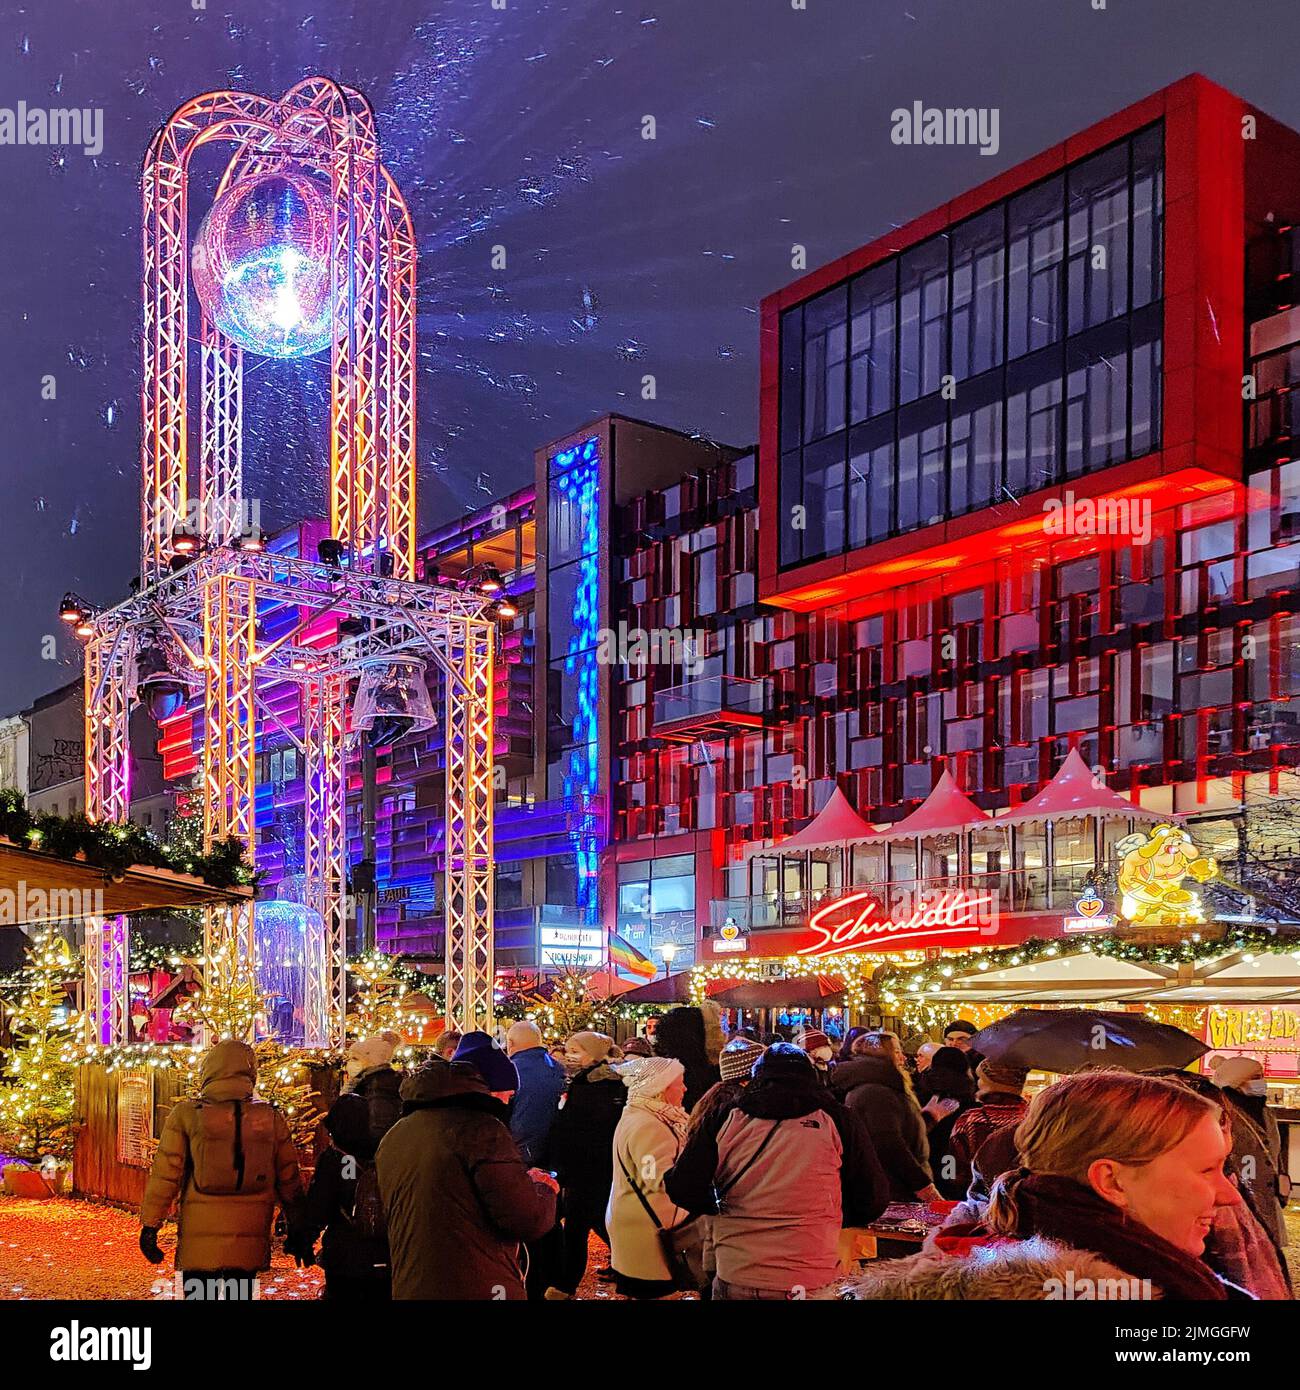 Santa Pauli, Hamburgs heißester Weihnachtsmarkt, St. Pauli, Hamburg, Deutschland, Europa Stockfoto